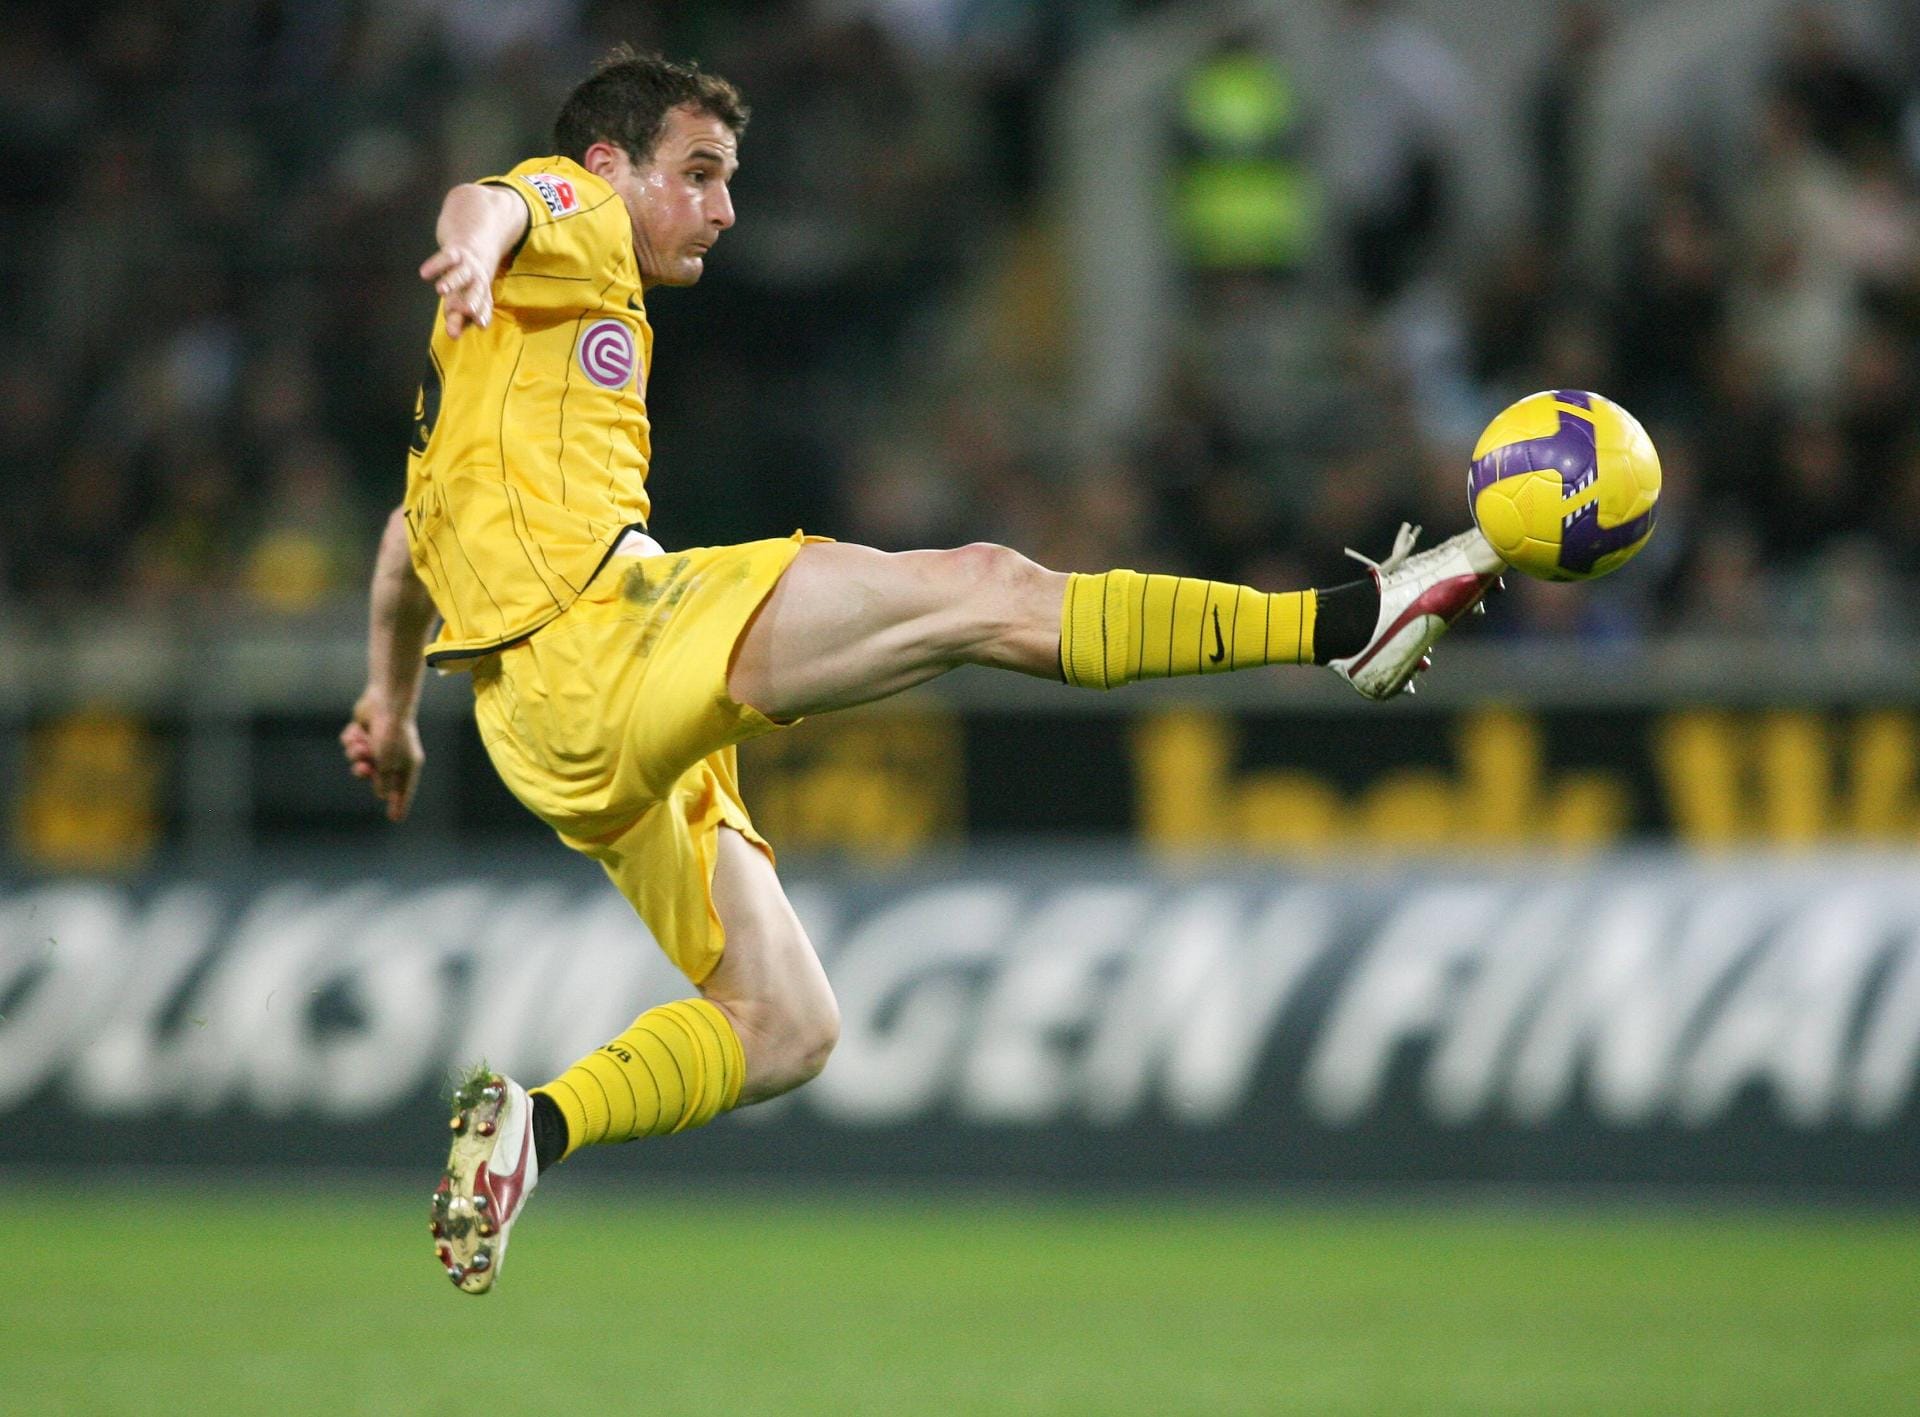 Alex Frei spielte von 2006 bis 2009 bei Borussia Dortmund, mit einer beachtlichen Quote: 74 Partien - 34 Tore.